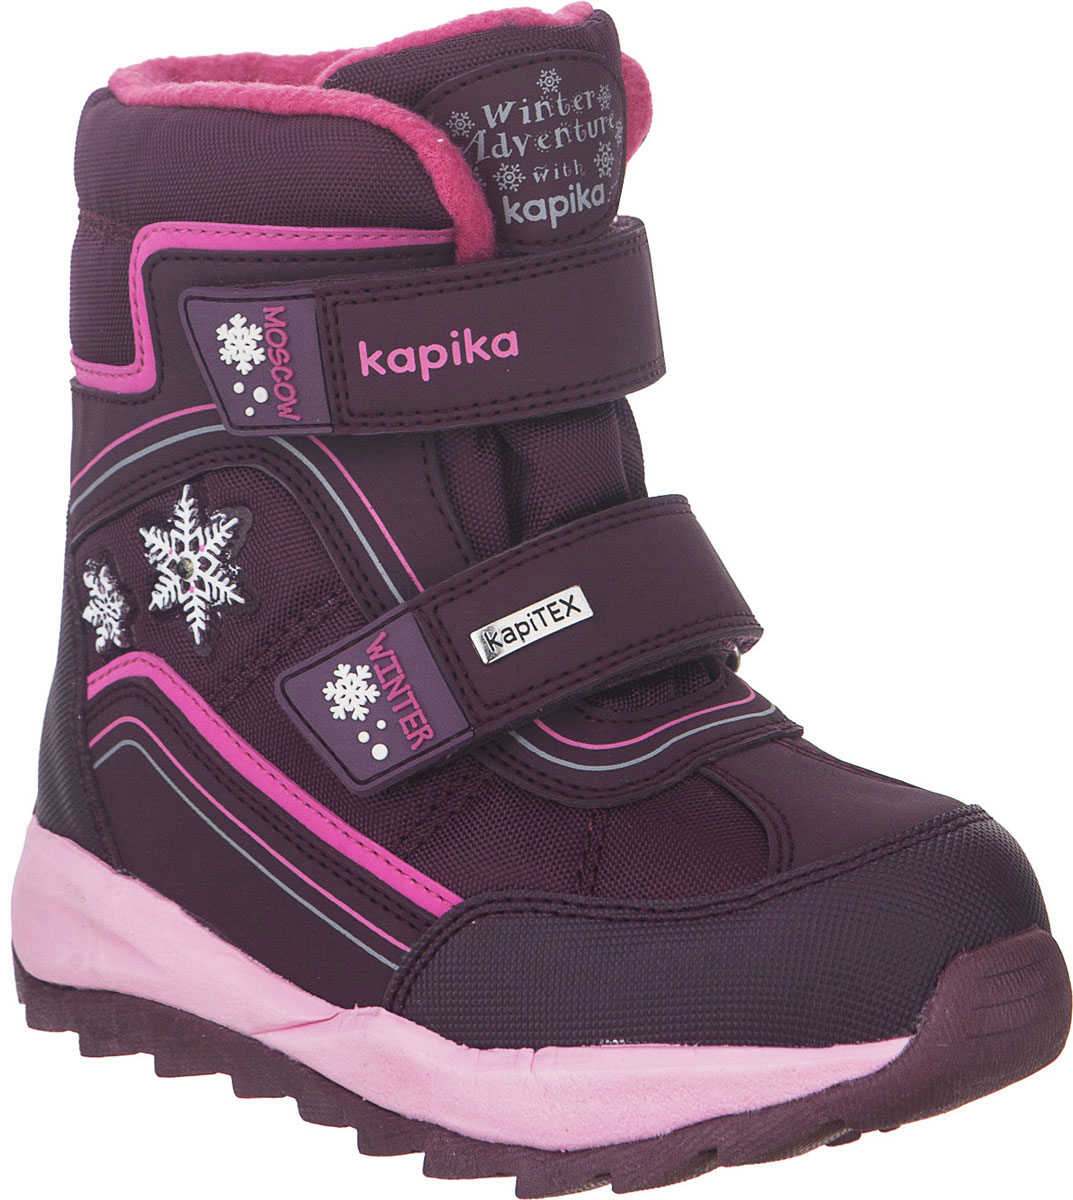 Ботинки для девочки Kapika, цвет: бордовый. 42238-1. Размер 31